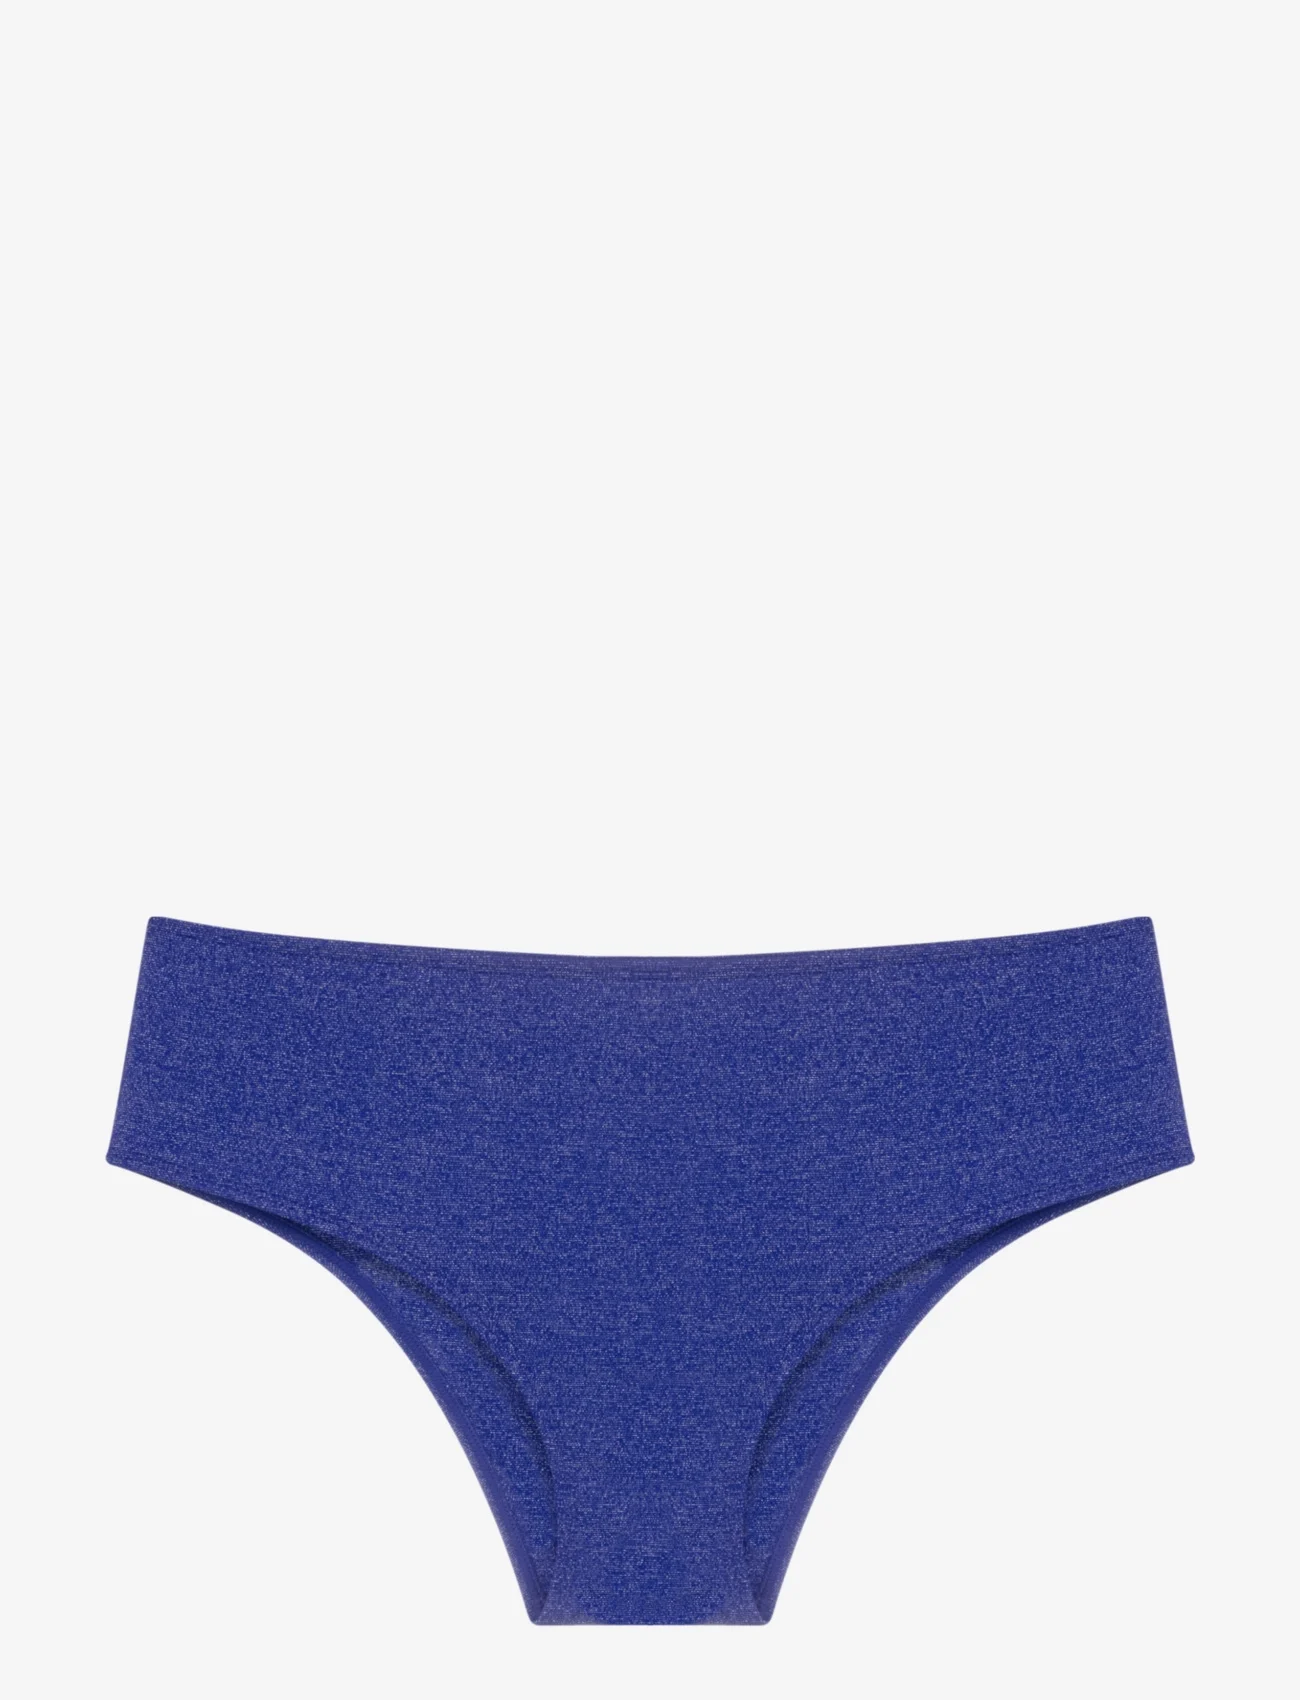 Dorina - YUMA BRIEF - korkeavyötäröiset bikinihousut - blue - 1